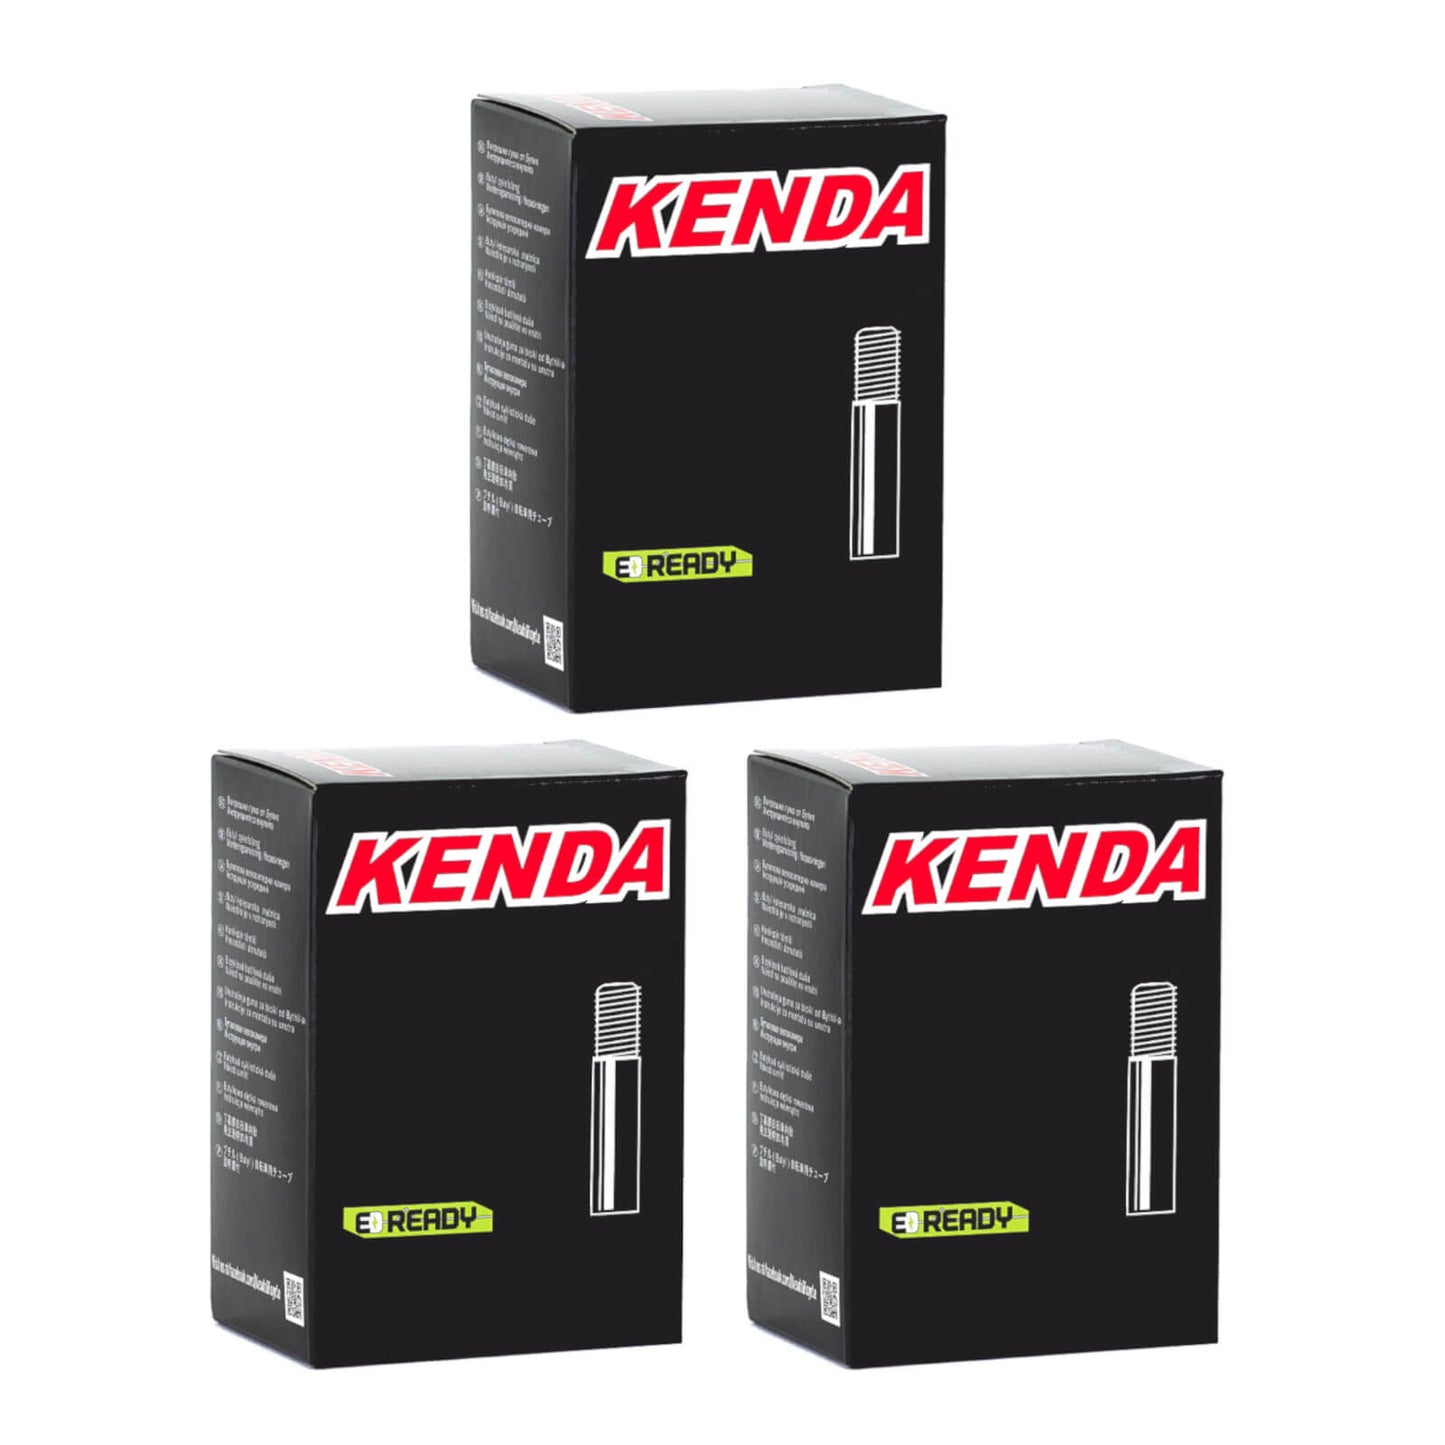 Kenda 24x2.75-3.0" 24 Inch Schrader Valve Bike Inner Tube Pack of 3